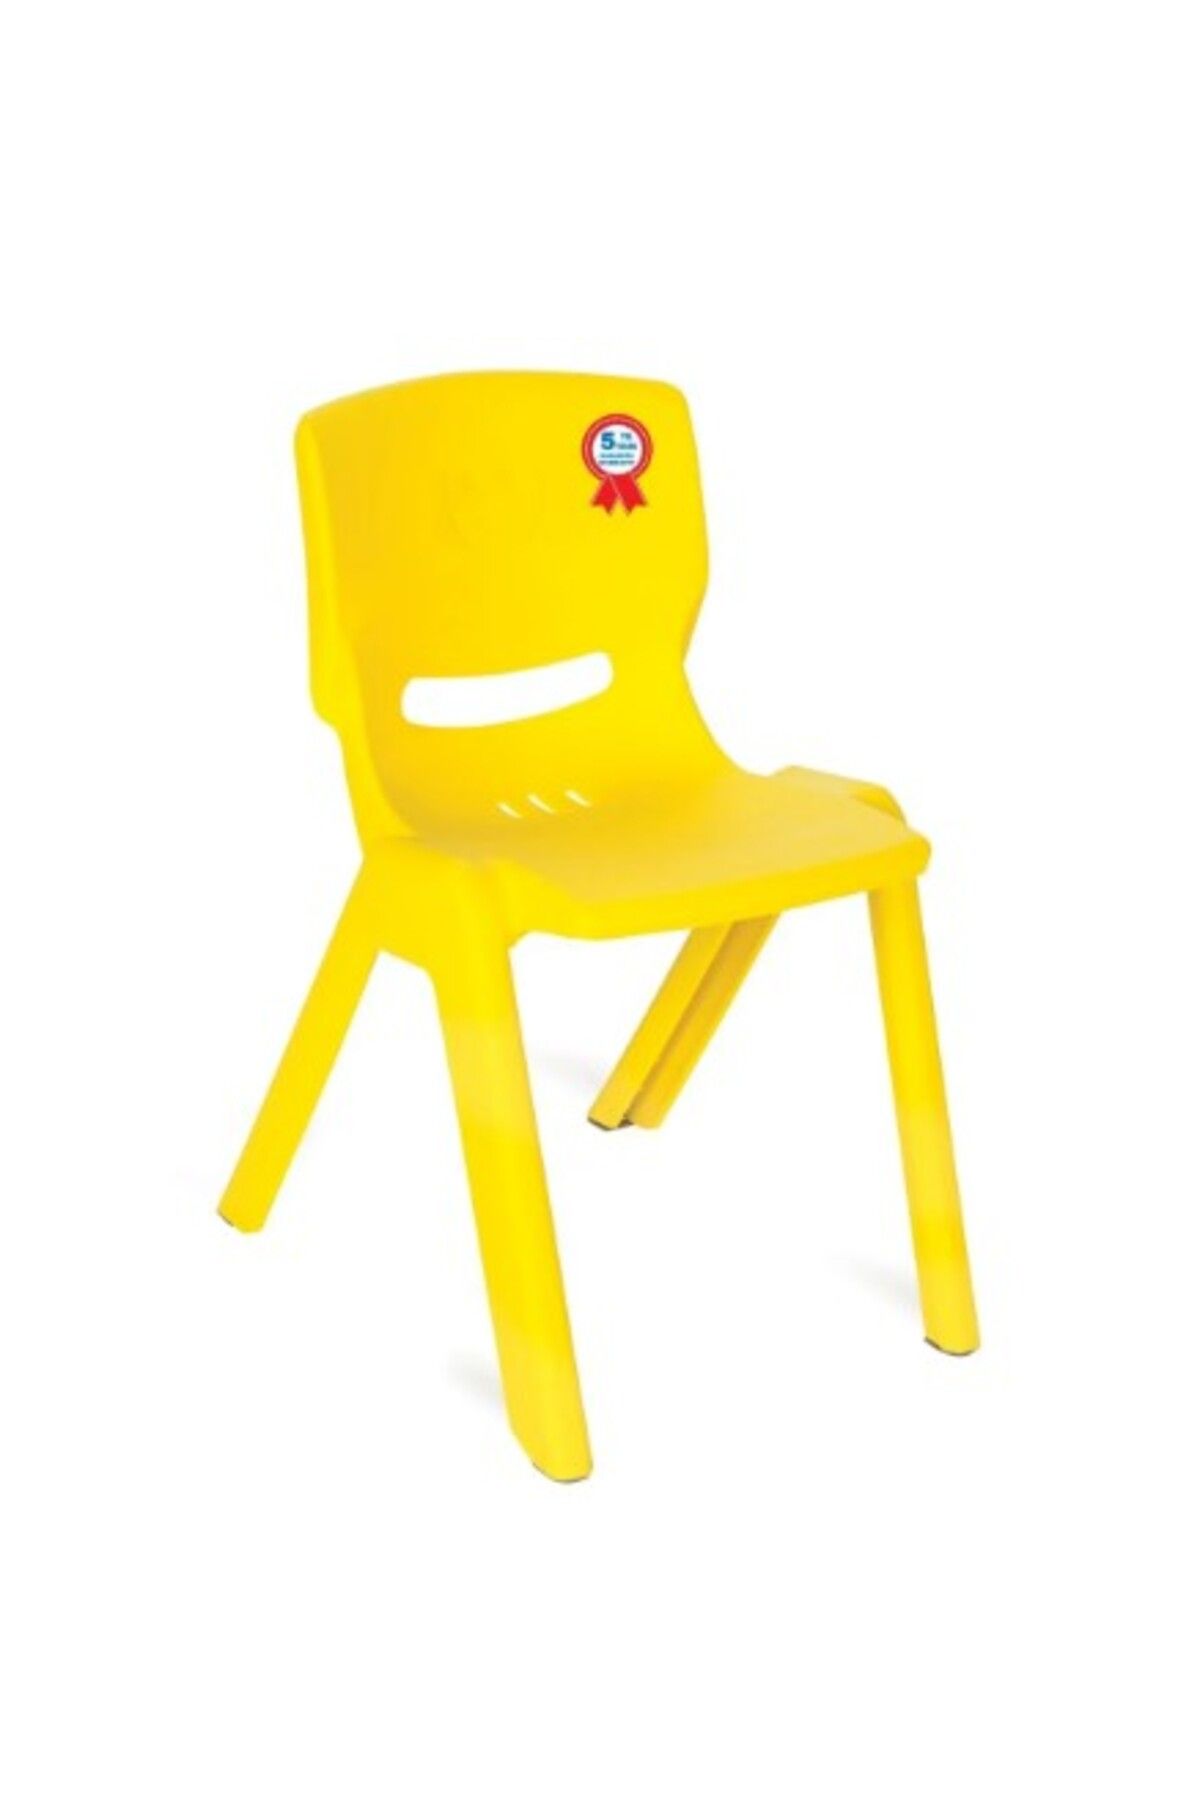 PİLSAN Pilsan 03-461 Happy Renkli Çocuk Sandalye